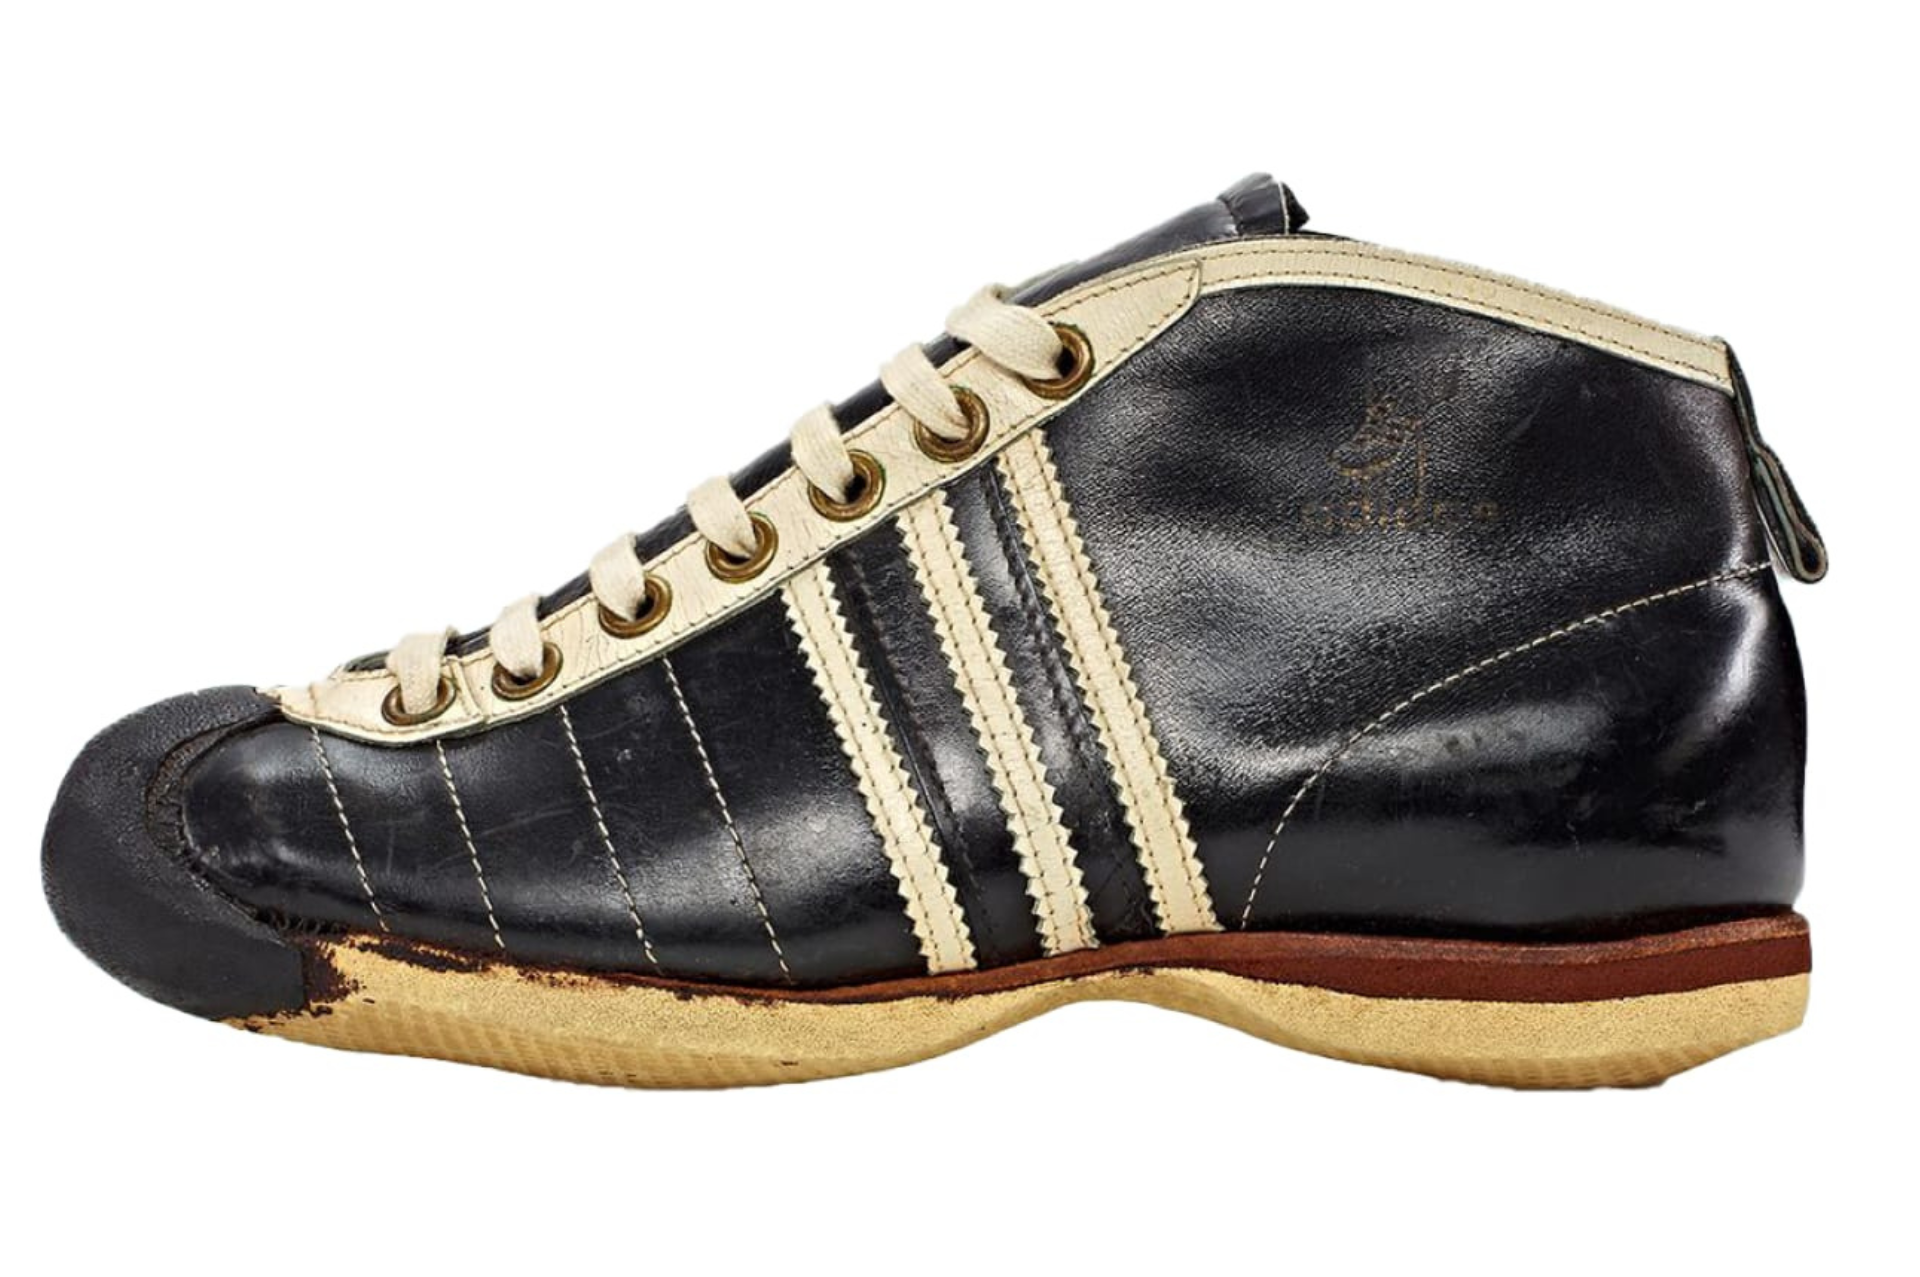 adidas Samba, las zapatillas del año y su historia